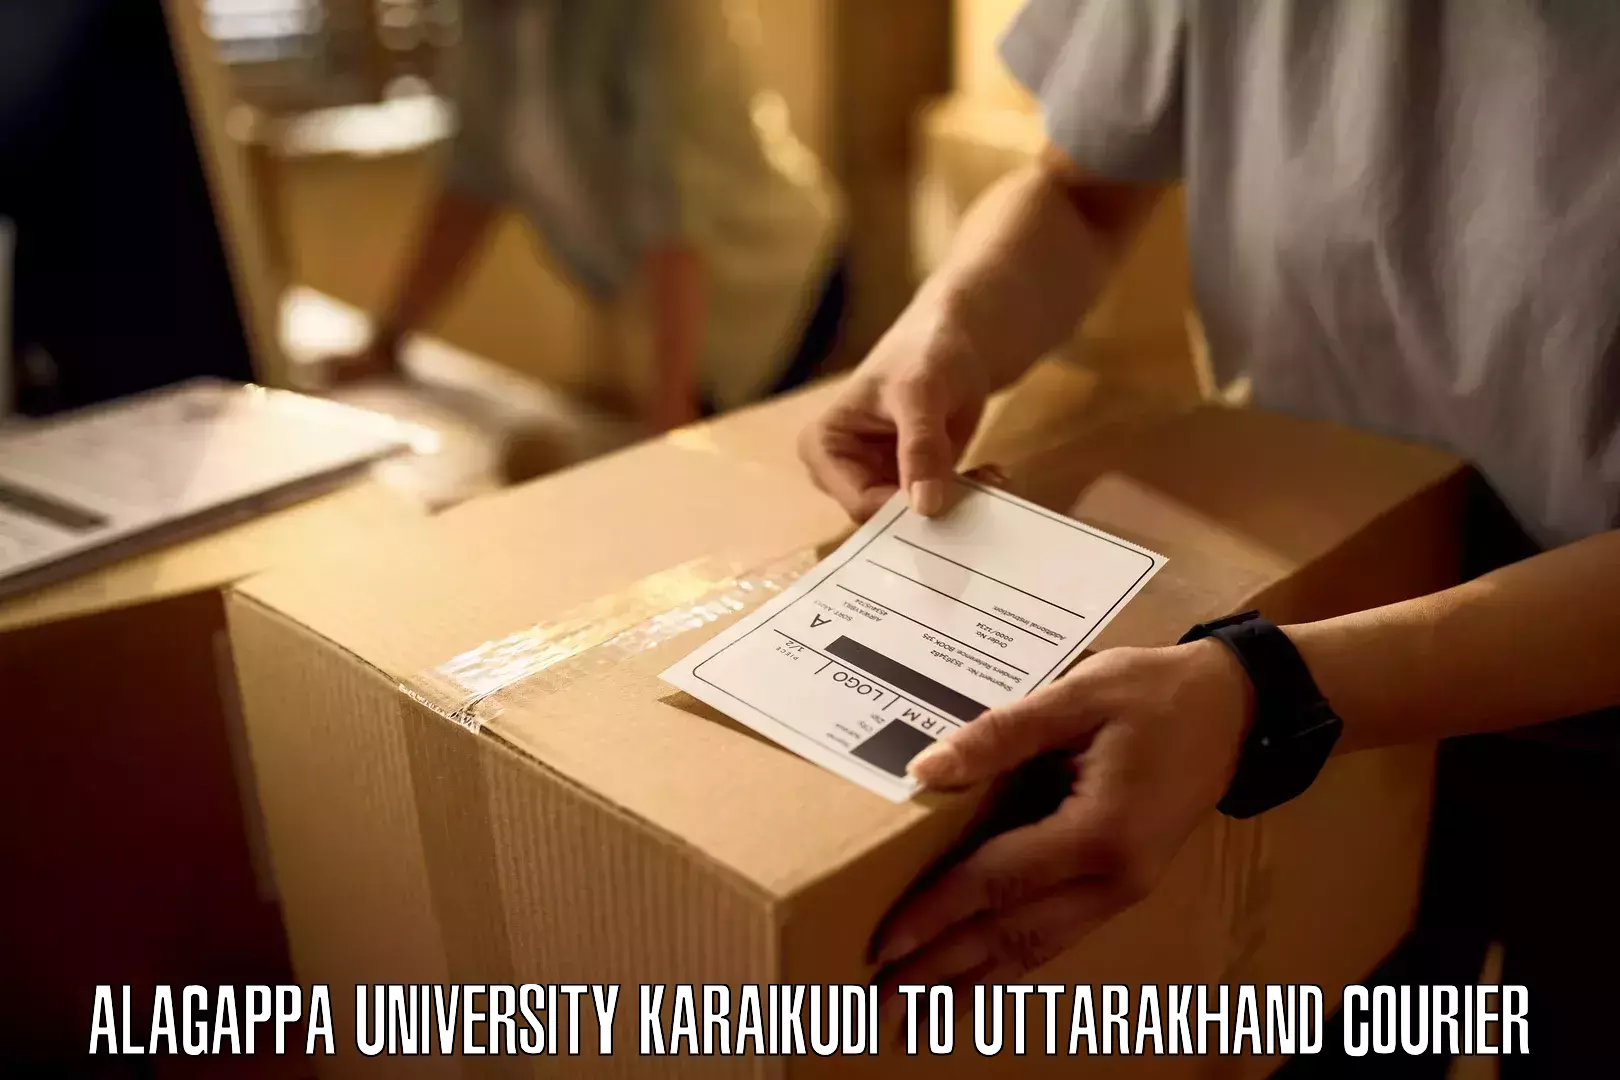 Speedy delivery service Alagappa University Karaikudi to Bageshwar